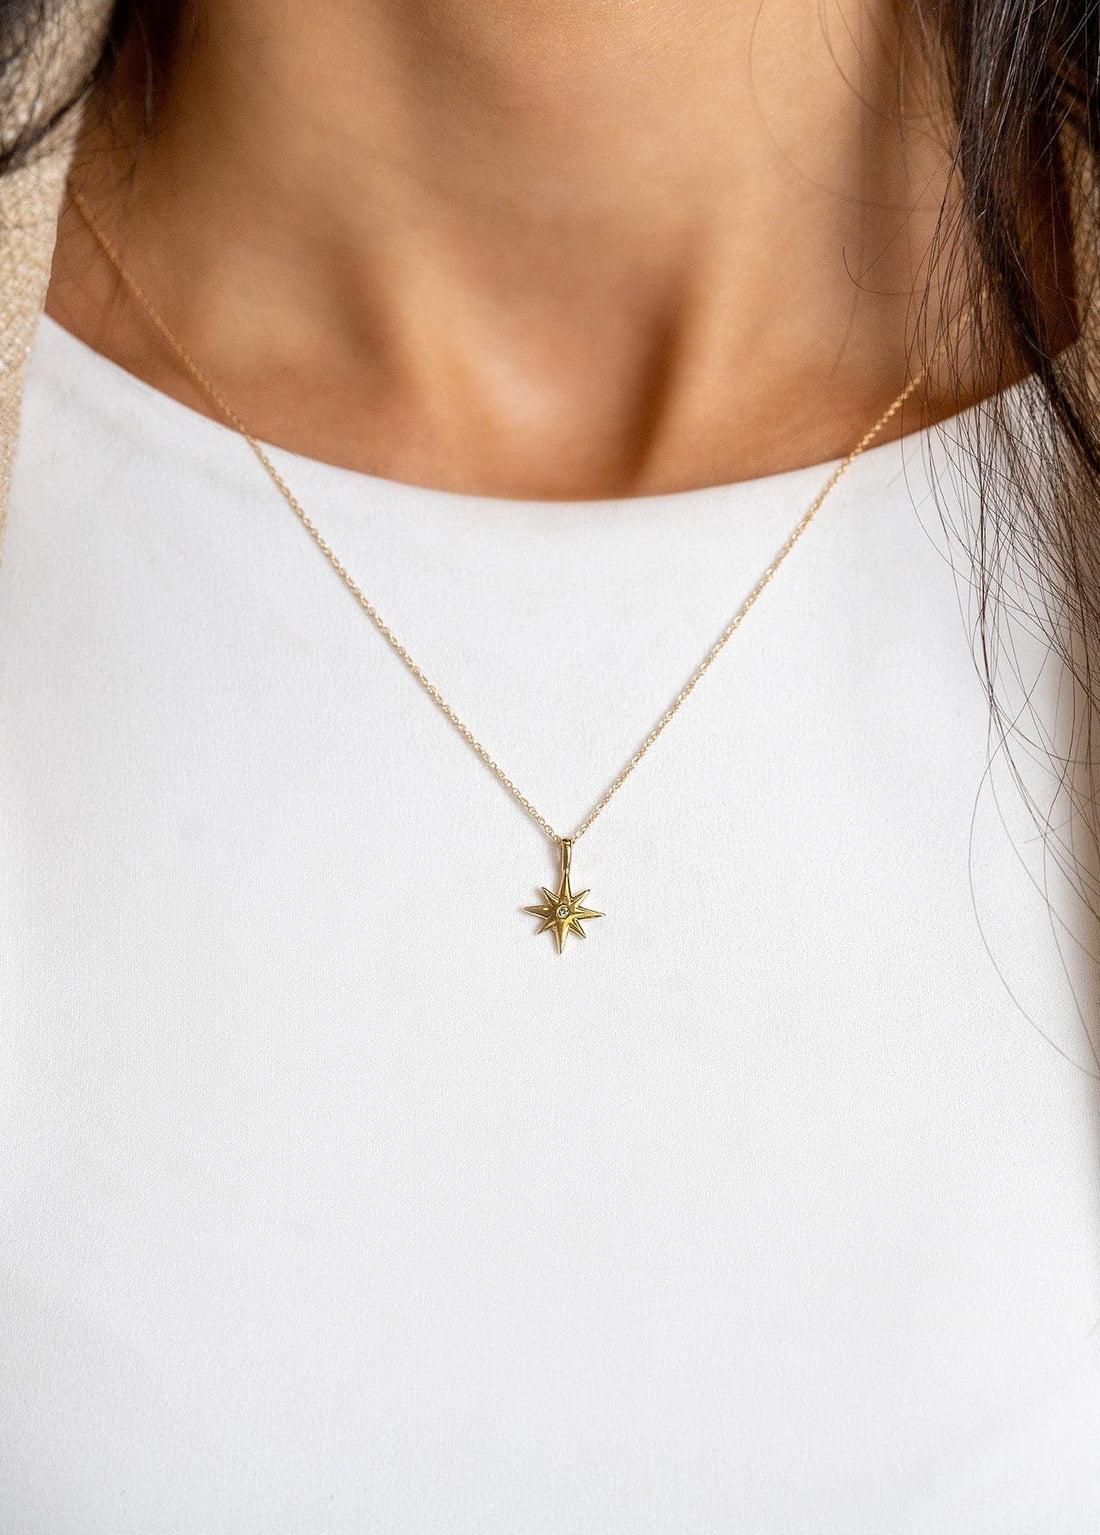 Yellow Gold Diamond Star Pendant Necklace by Carla | Nancy B. - Skeie's Jewelers